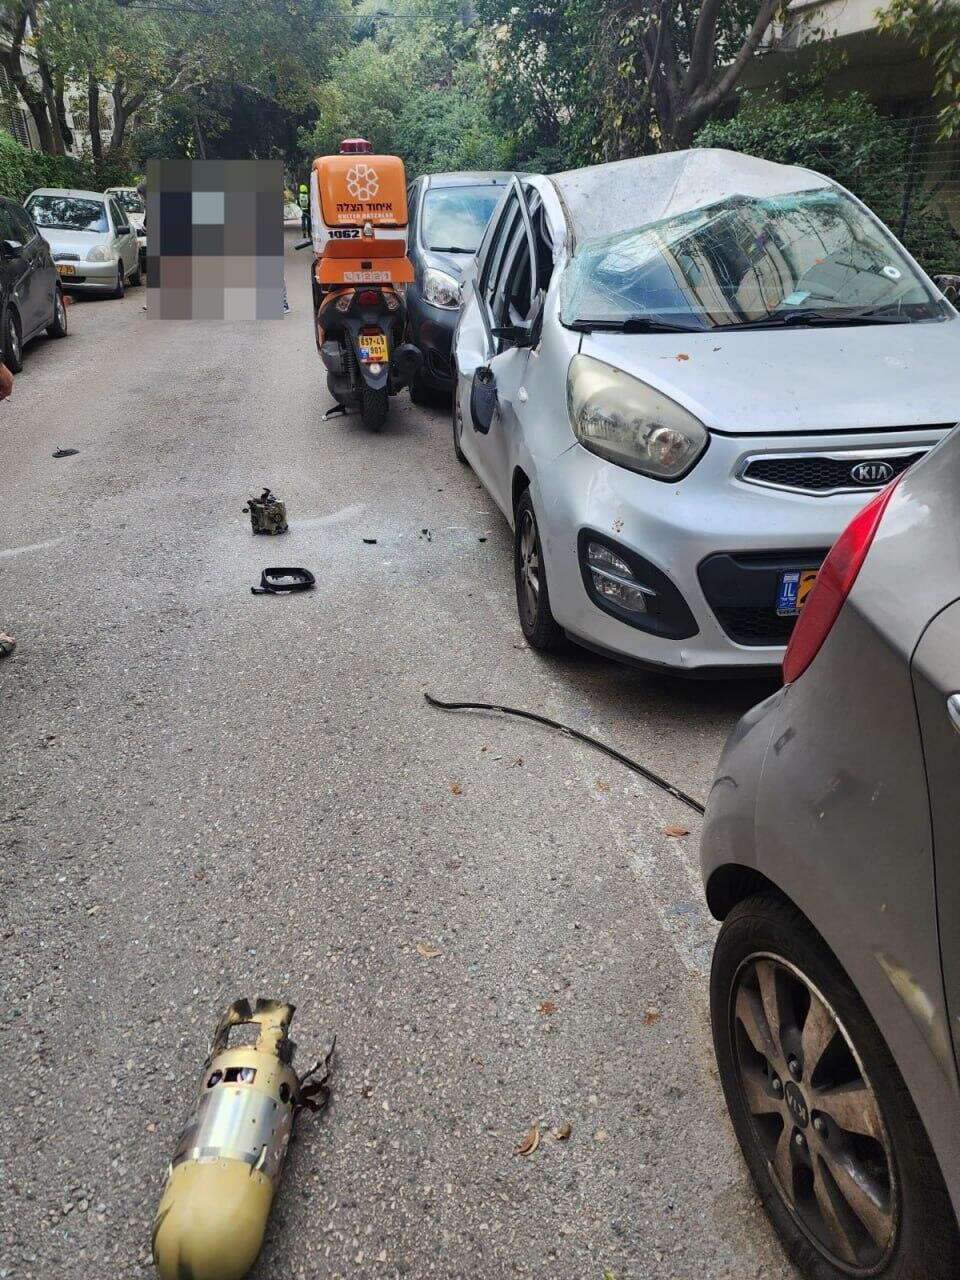 רסיסים נפלו על רכב בתל אביב